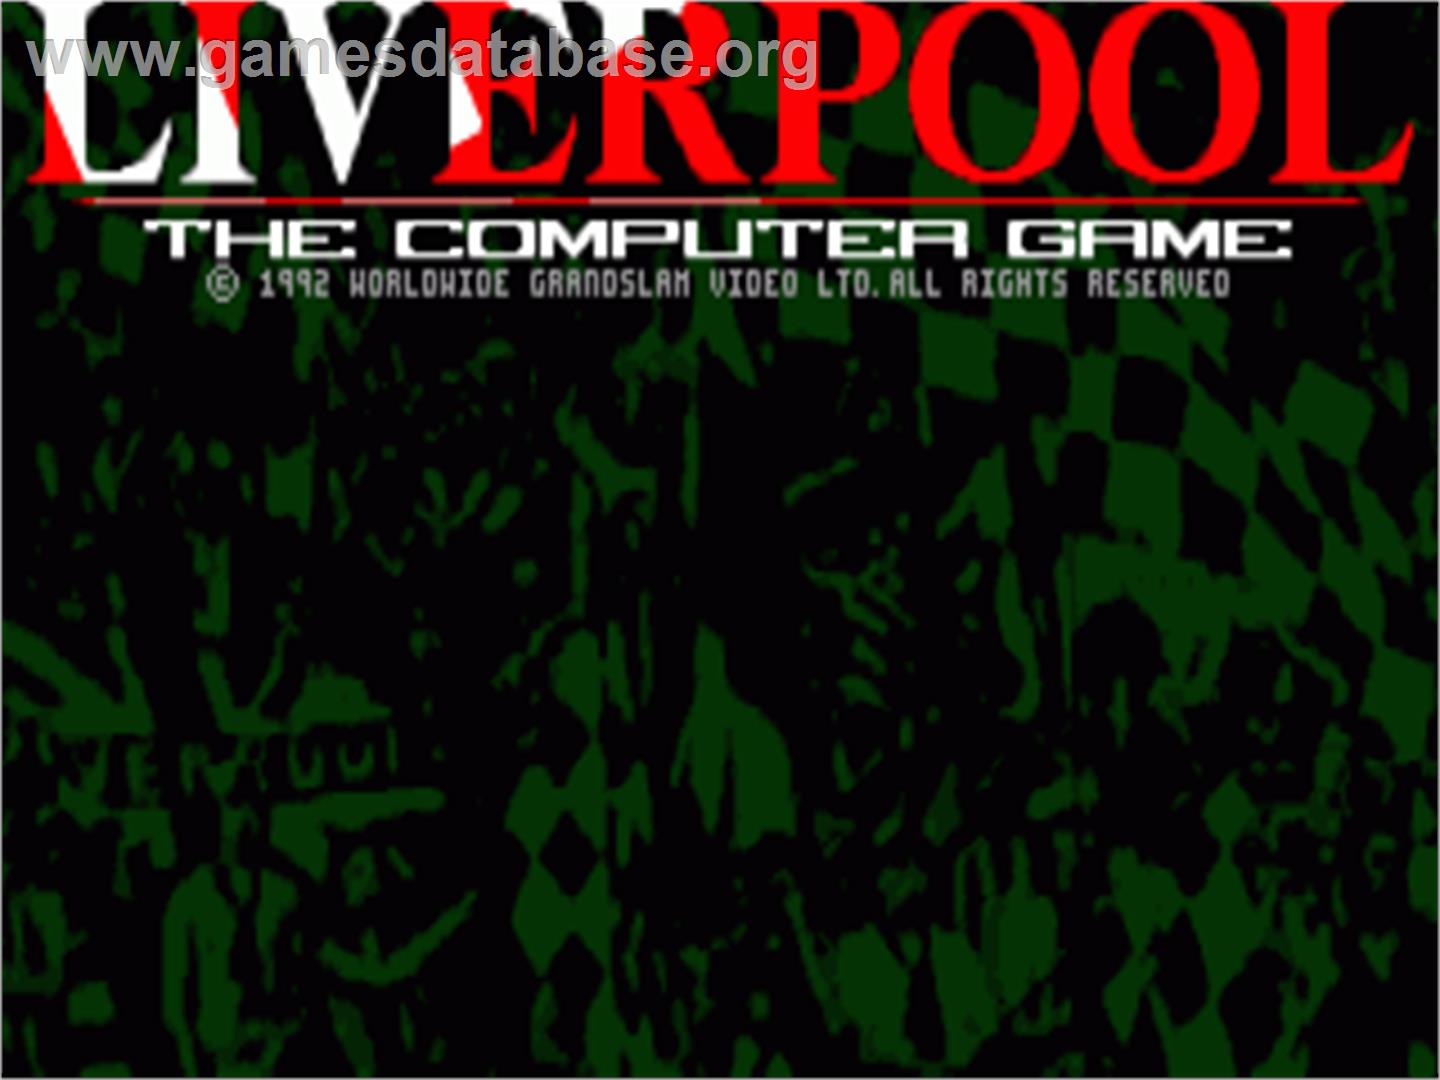 Liverpool: The Computer Game - Commodore Amiga - Artwork - Title Screen